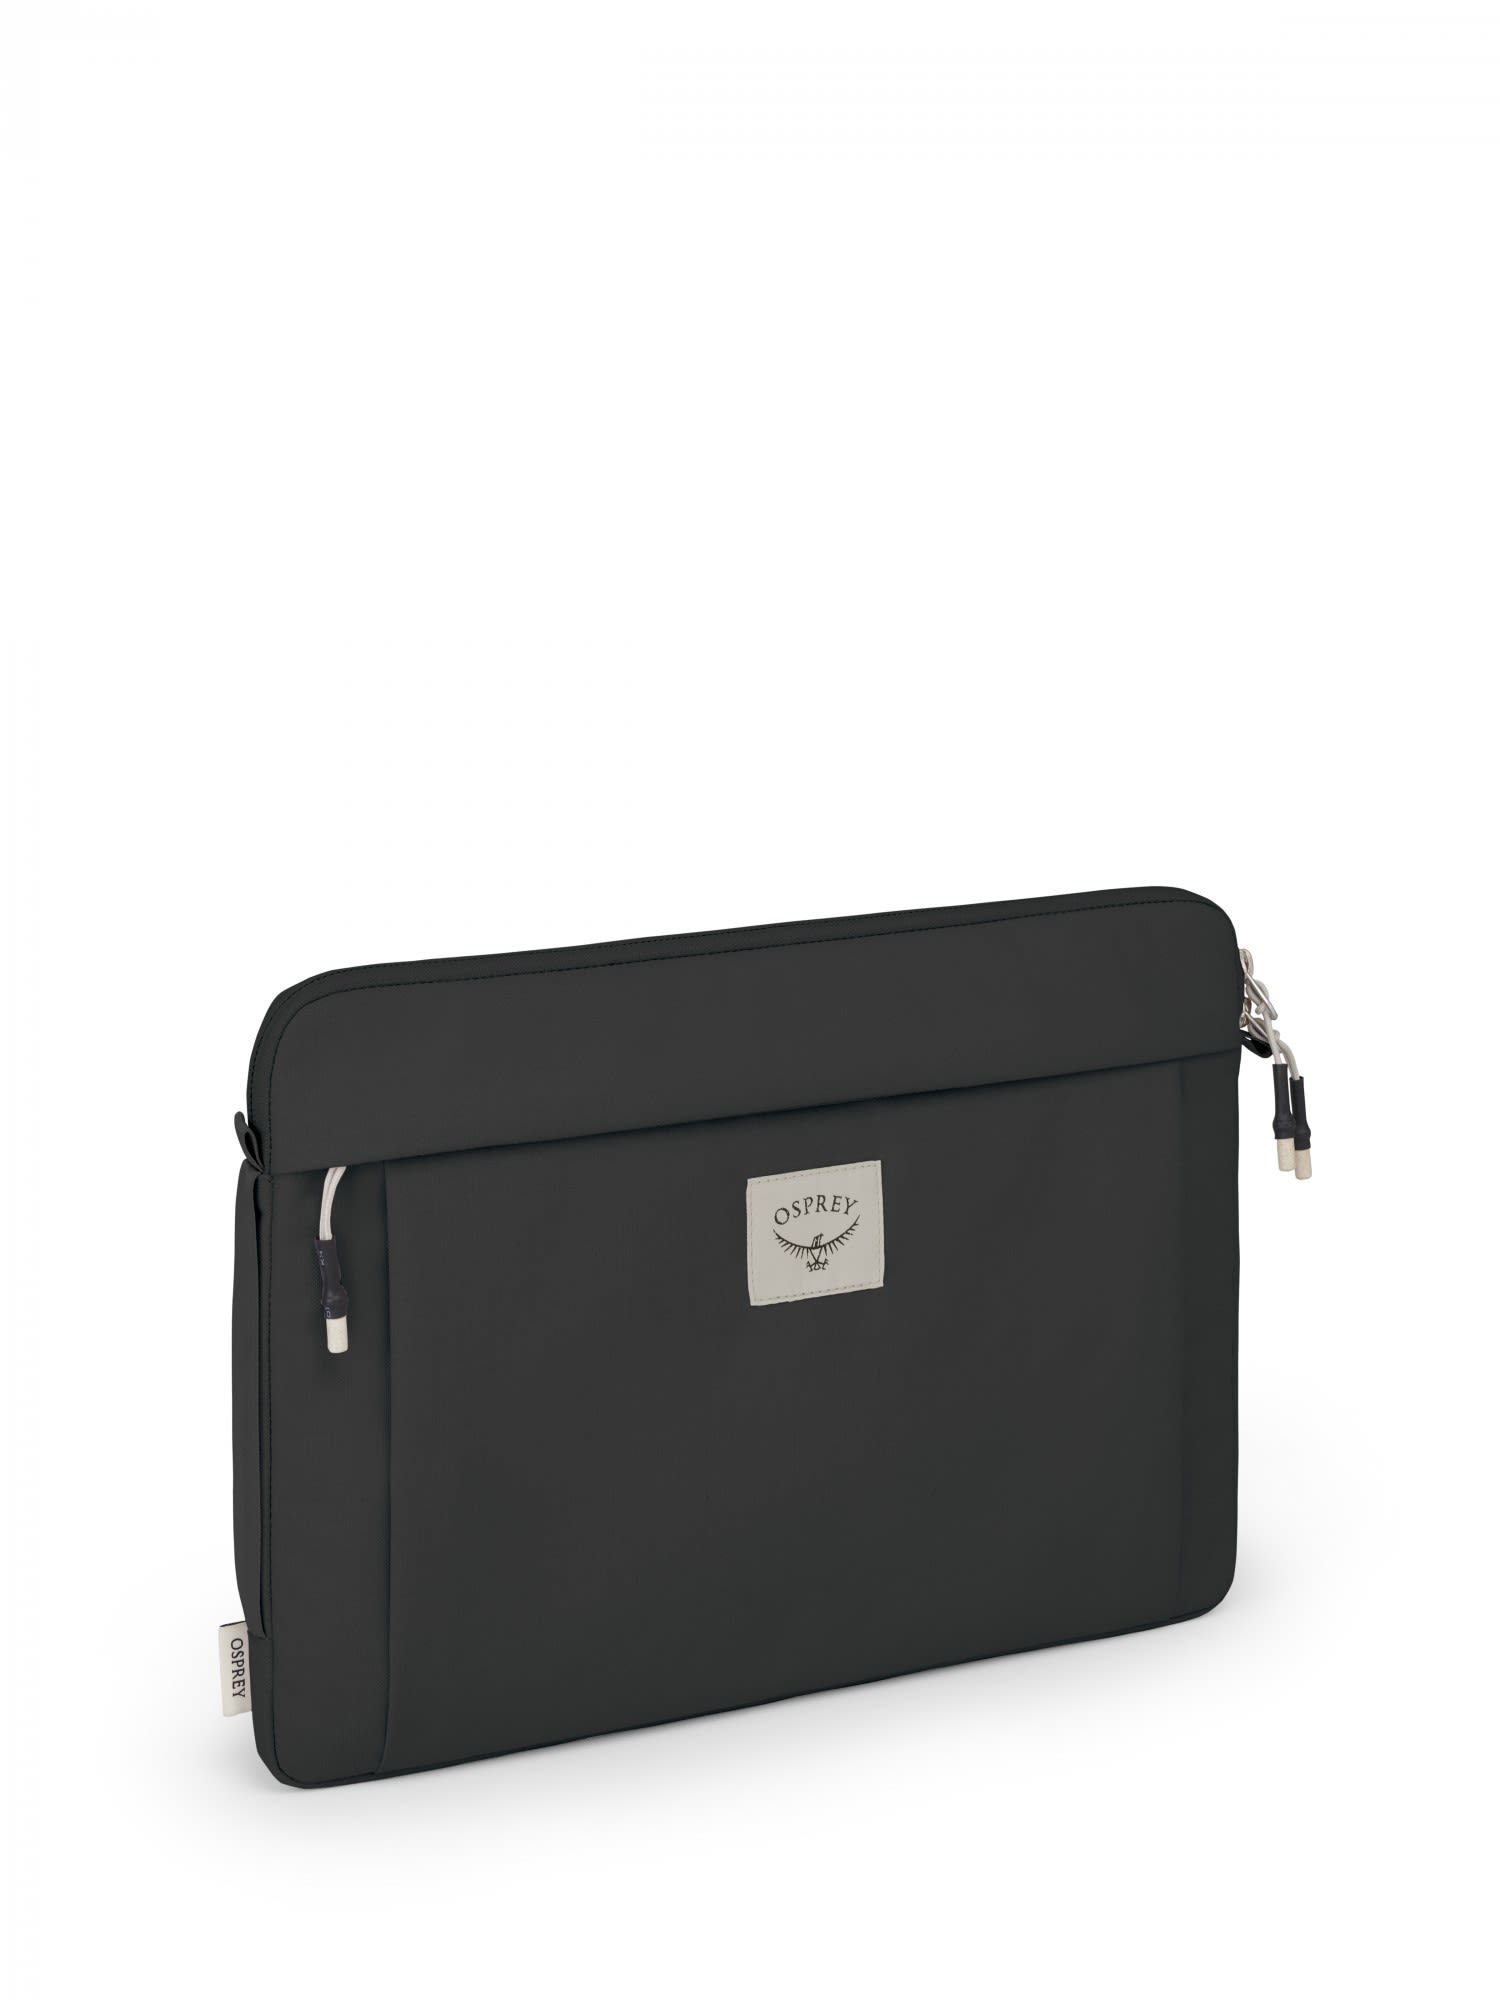 Osprey Arcane Laptop Sleeve 15 Schwarz- Notebooktaschen- Grsse One Size - Farbe Stonewash Black unter Osprey